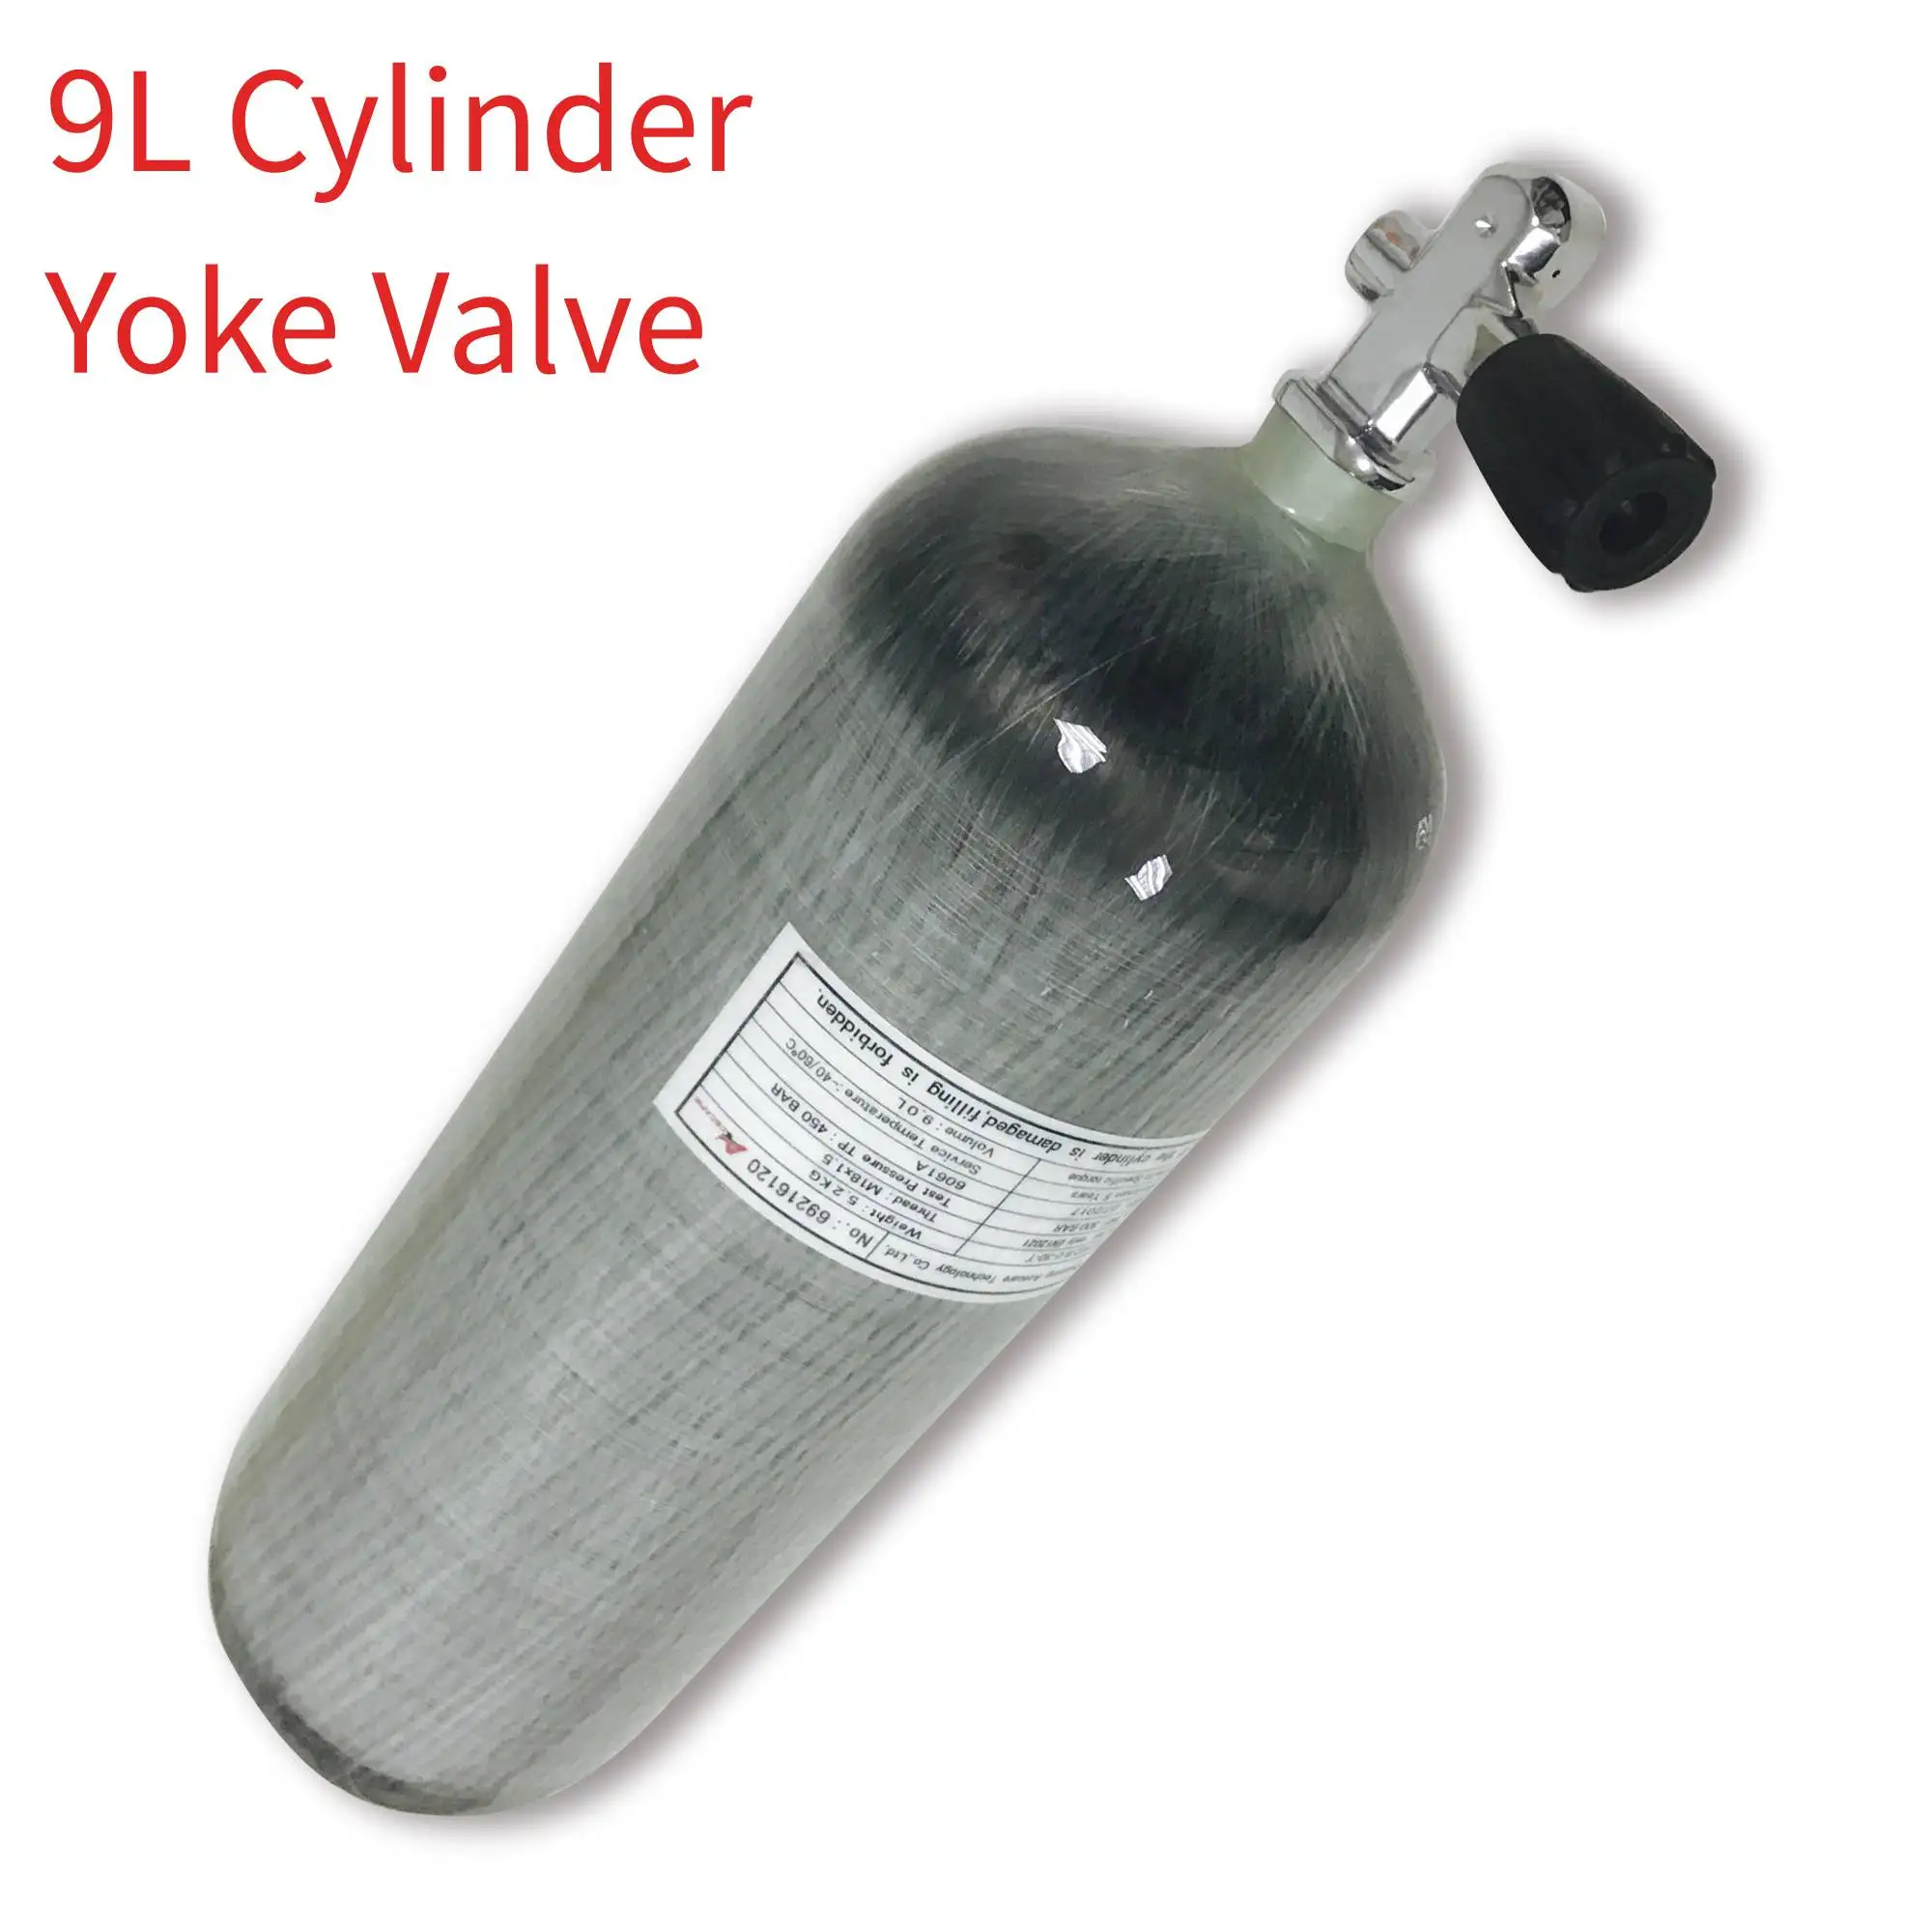 Ac10951 300 бар баллон для дайвинга клапан Din вставка-преобразует Din Yoke 9L мини бутылка подводное плавание Танк Pcp винтовка